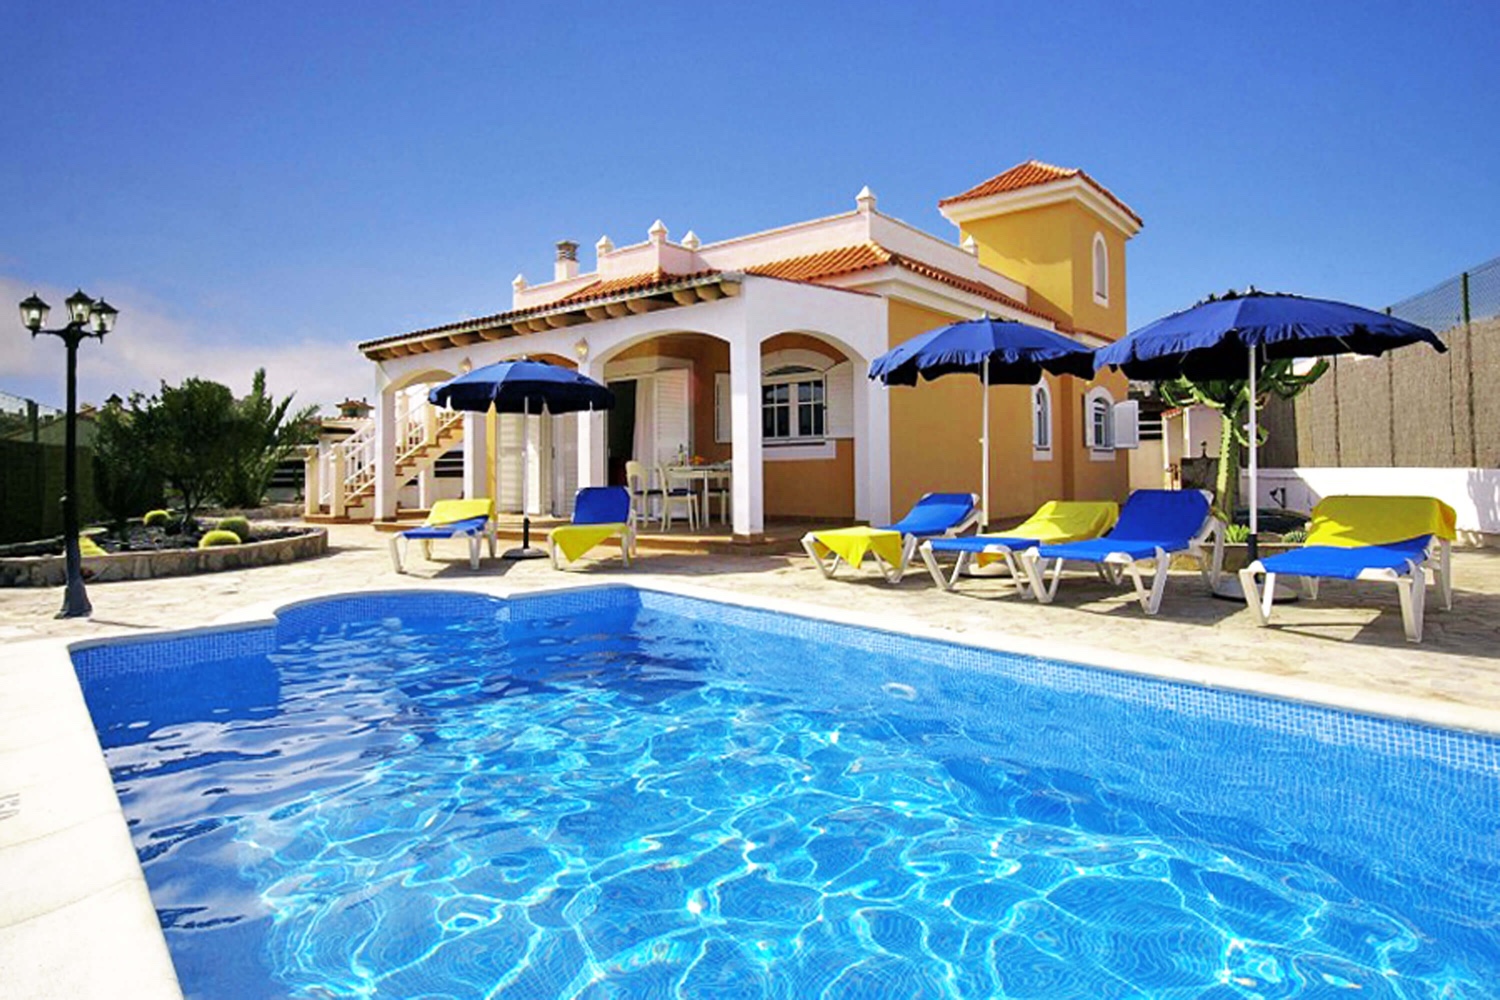 Elegante Spaanse stijl villa met drie slaapkamers en een eigen zwembad naast de gemanicuurde golfbaan van Caleta de Fuste